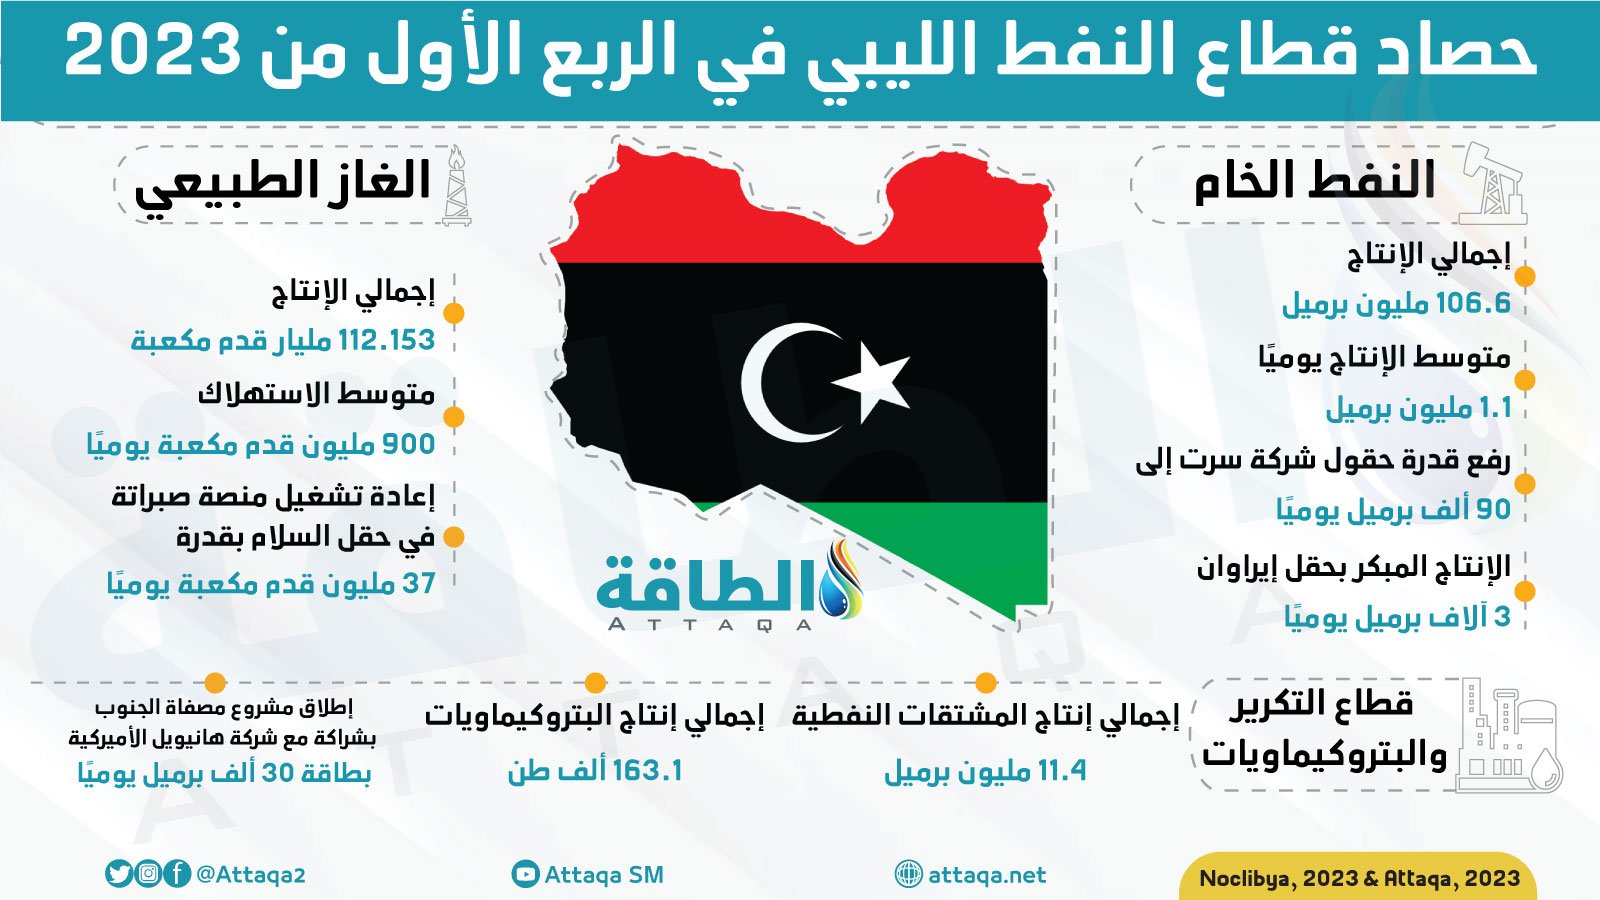 حصاد قطاع النفط الليبي في الربع الأول من 2023